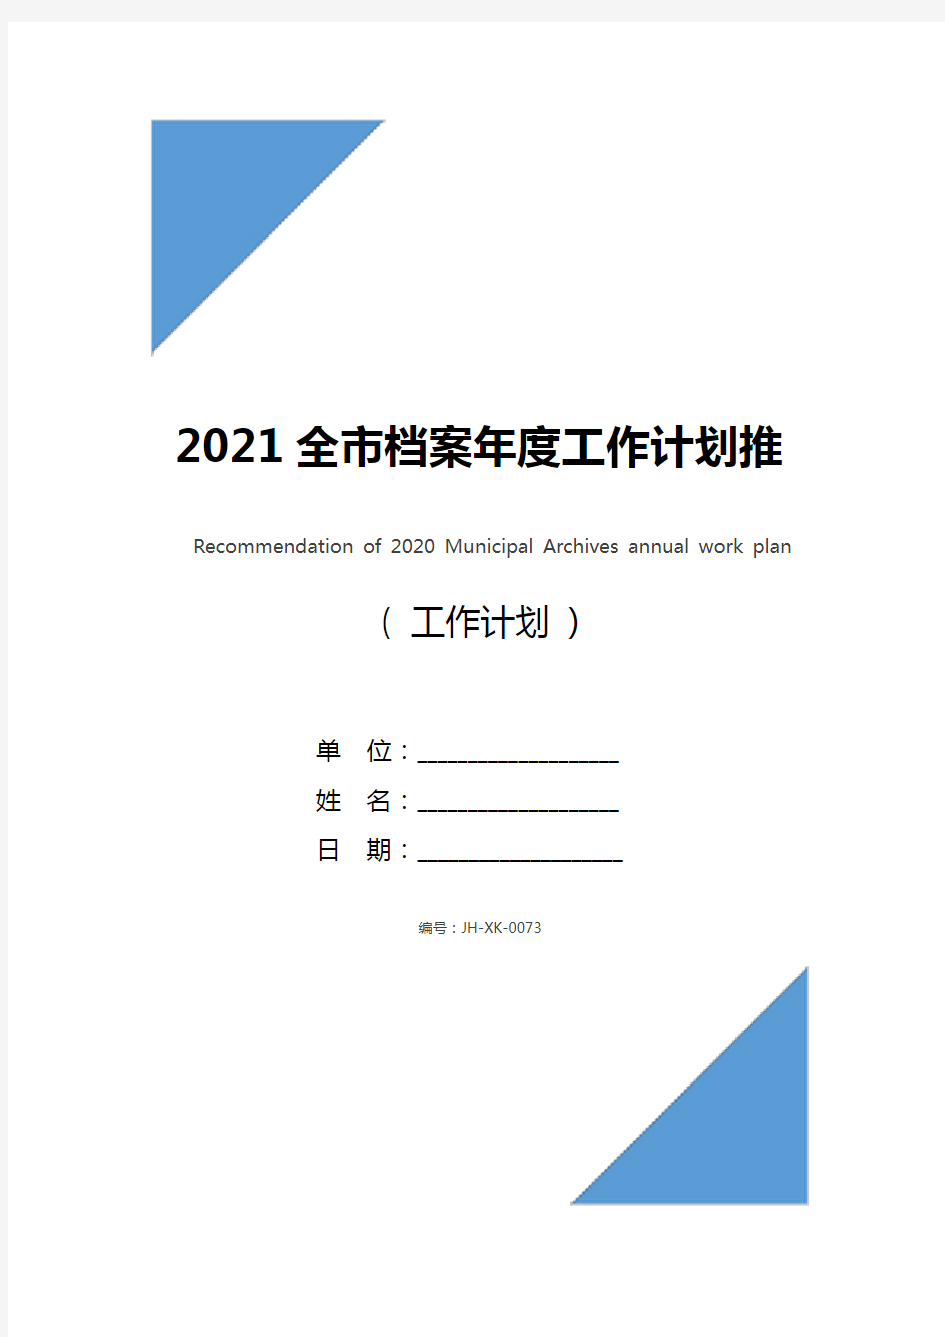 2021全市档案年度工作计划推荐(通用版)